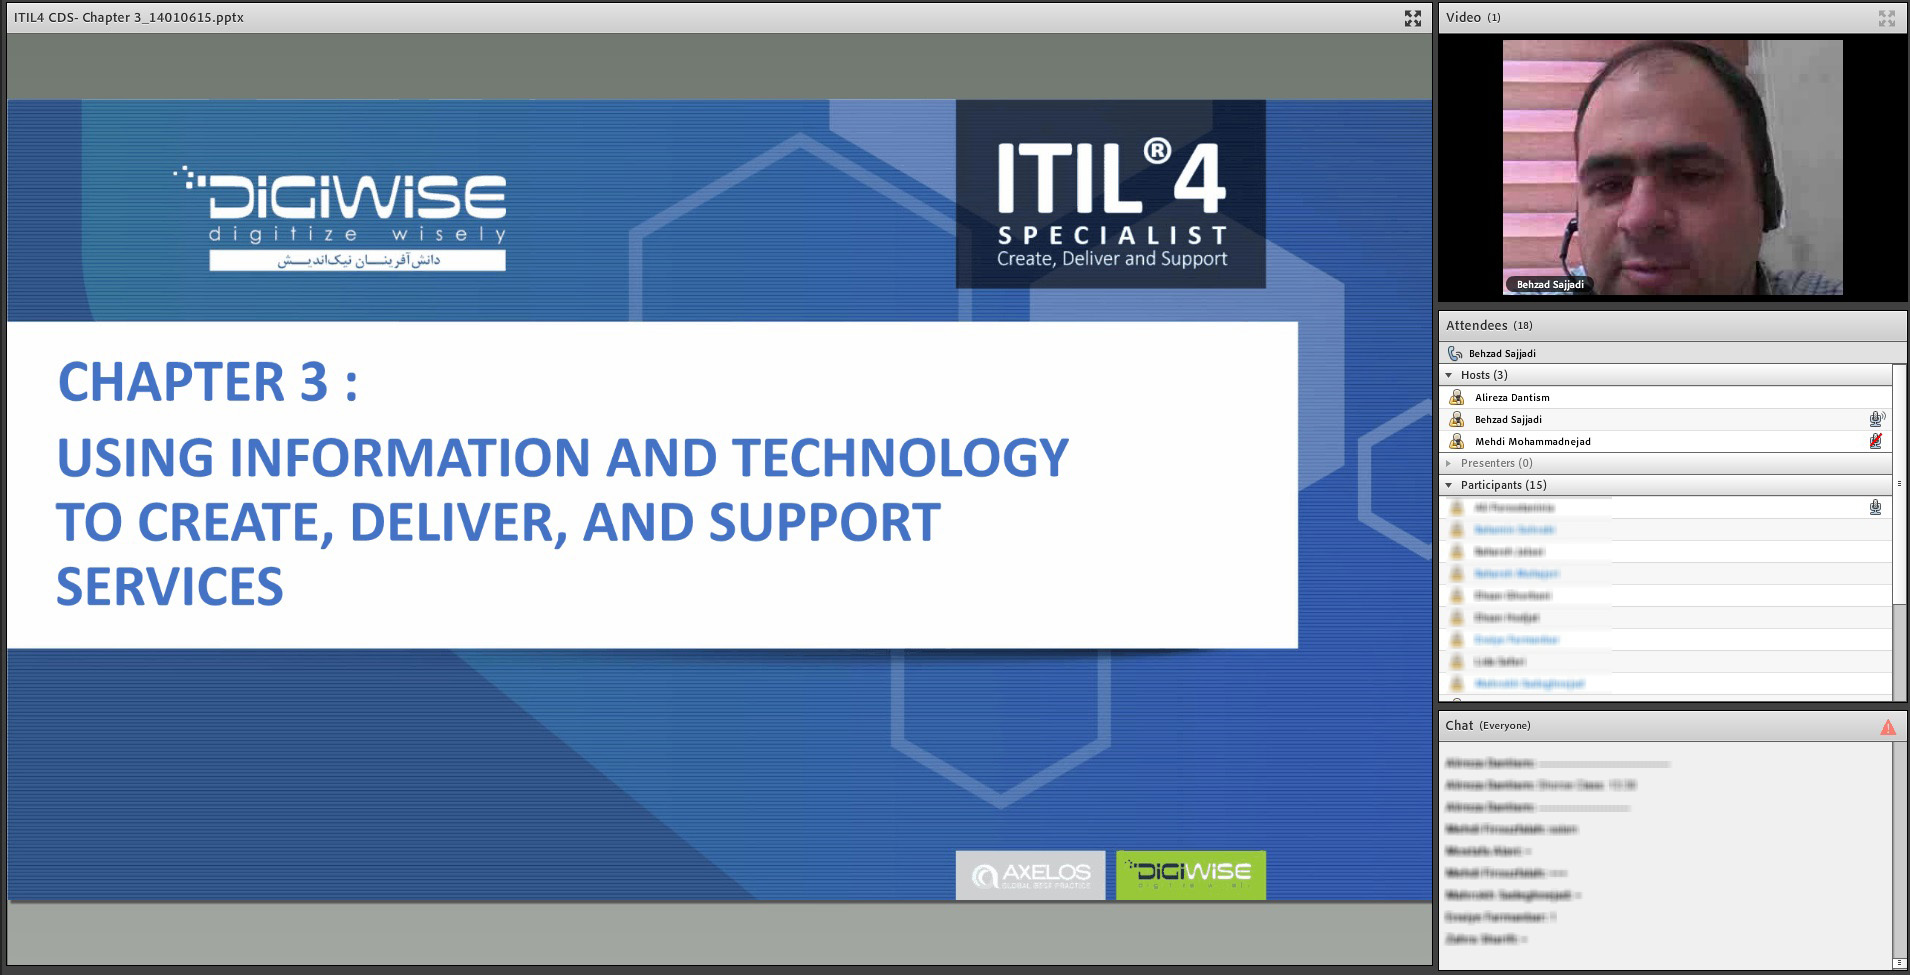 مهدندس بهزاد سجادی در سومین دوره آنلاین ITIL4 Create, Deliver and Support (CDS) دیجی وایز آکادمی